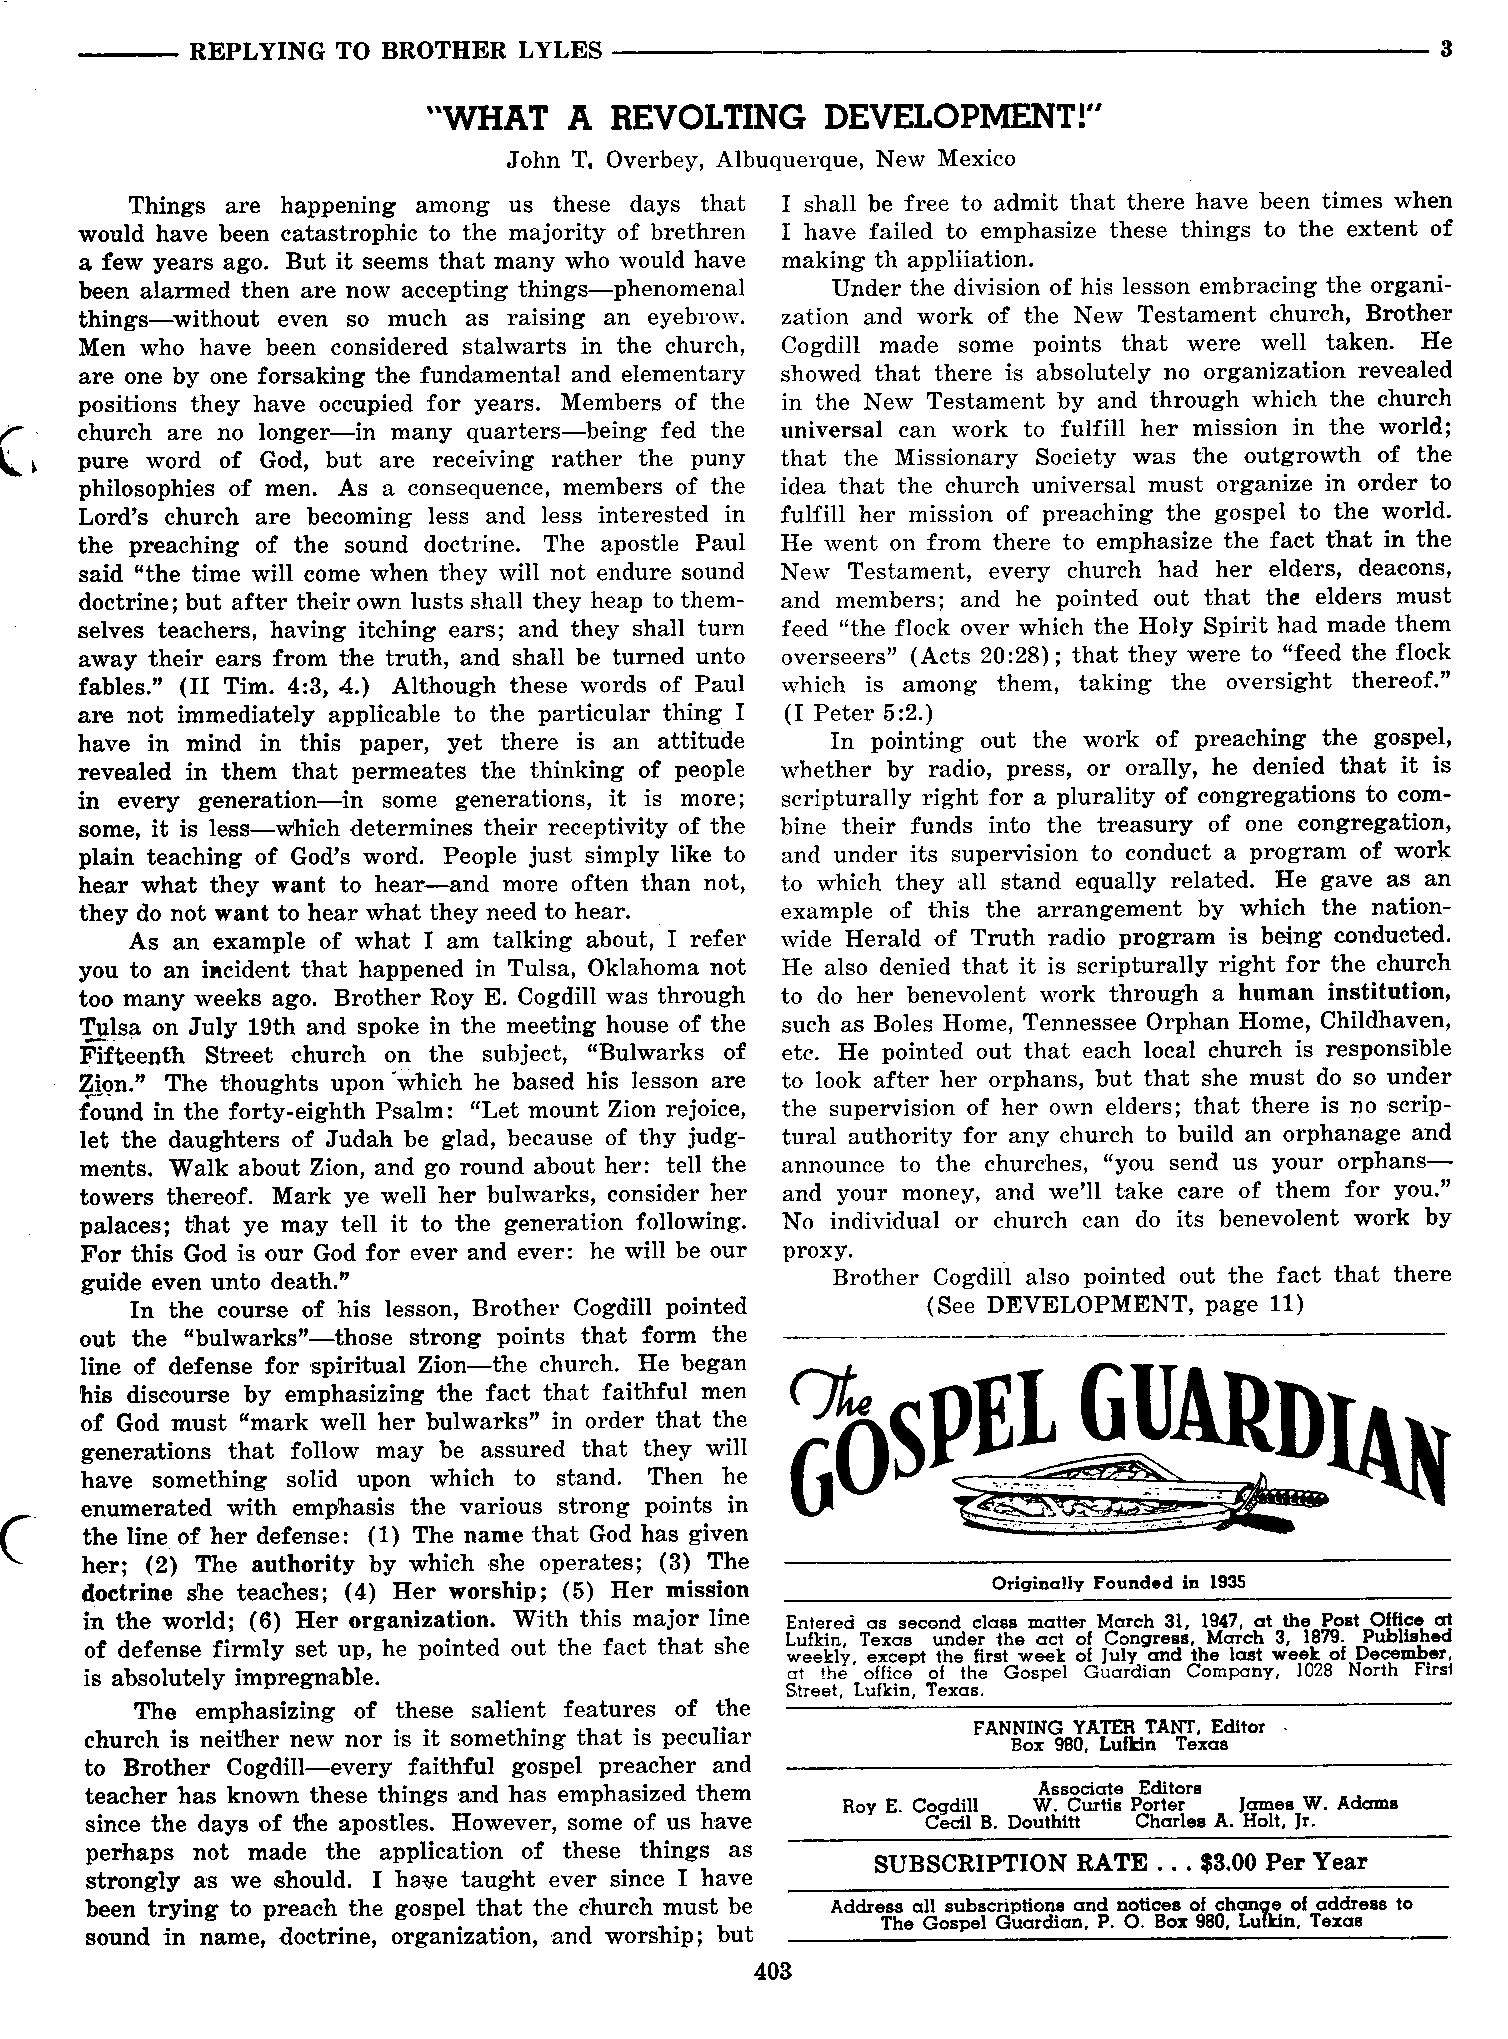 Gospel Guardian Original: Vol.7 No.26 Pg.3